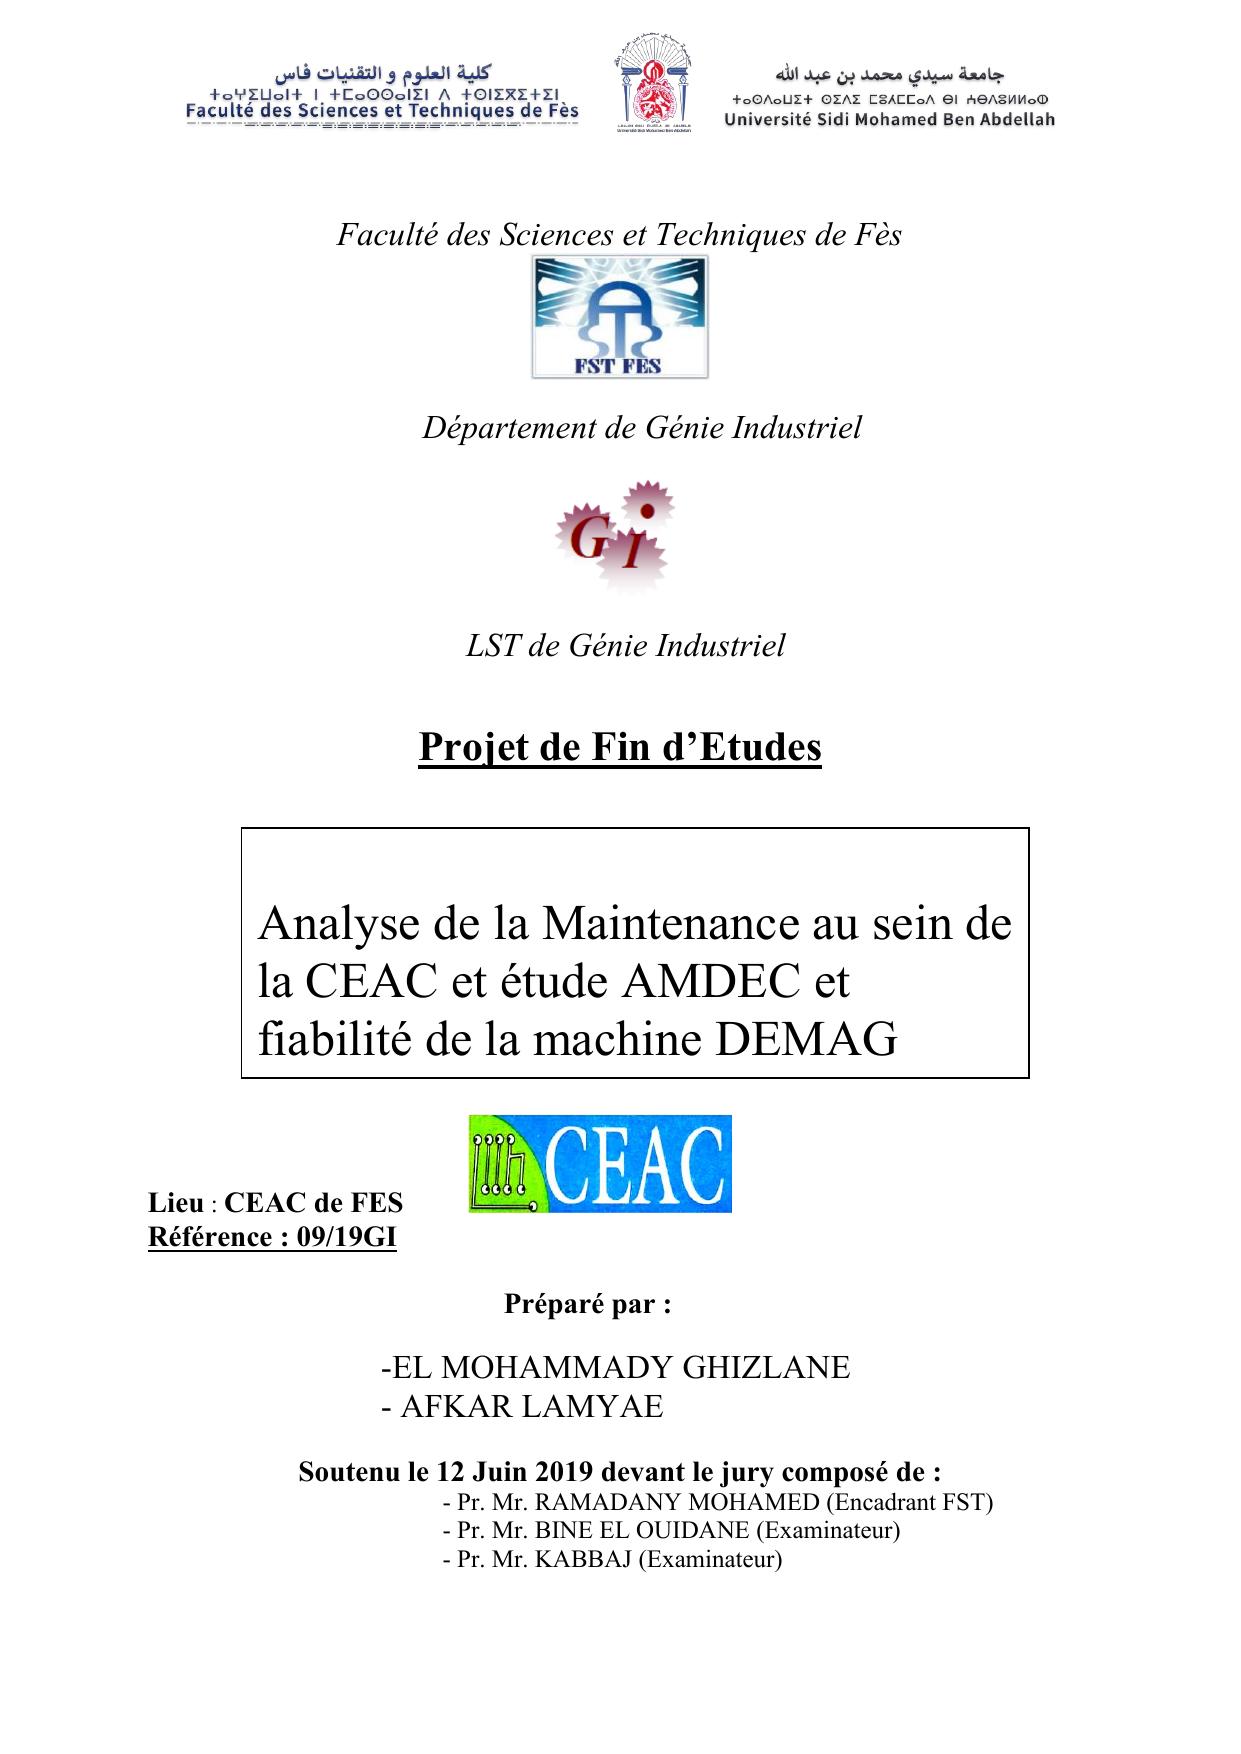 Analyse de la Maintenance au sein de la CEAC et étude AMDEC et fiabilité de la machine DEMAG